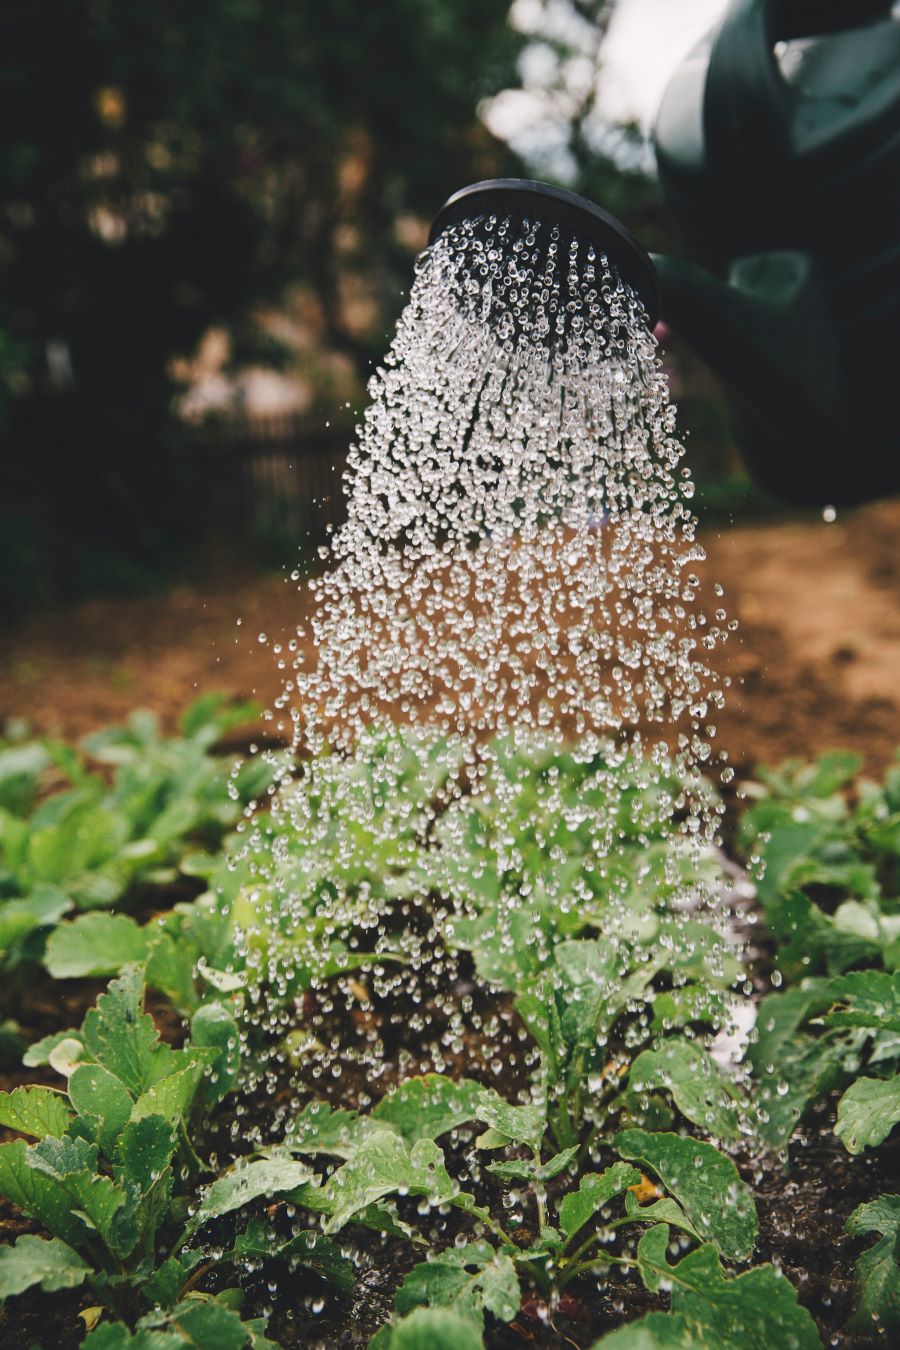 Jardins écologiques en ville 3/3 : adopter une gestion durable de l’eau au jardin